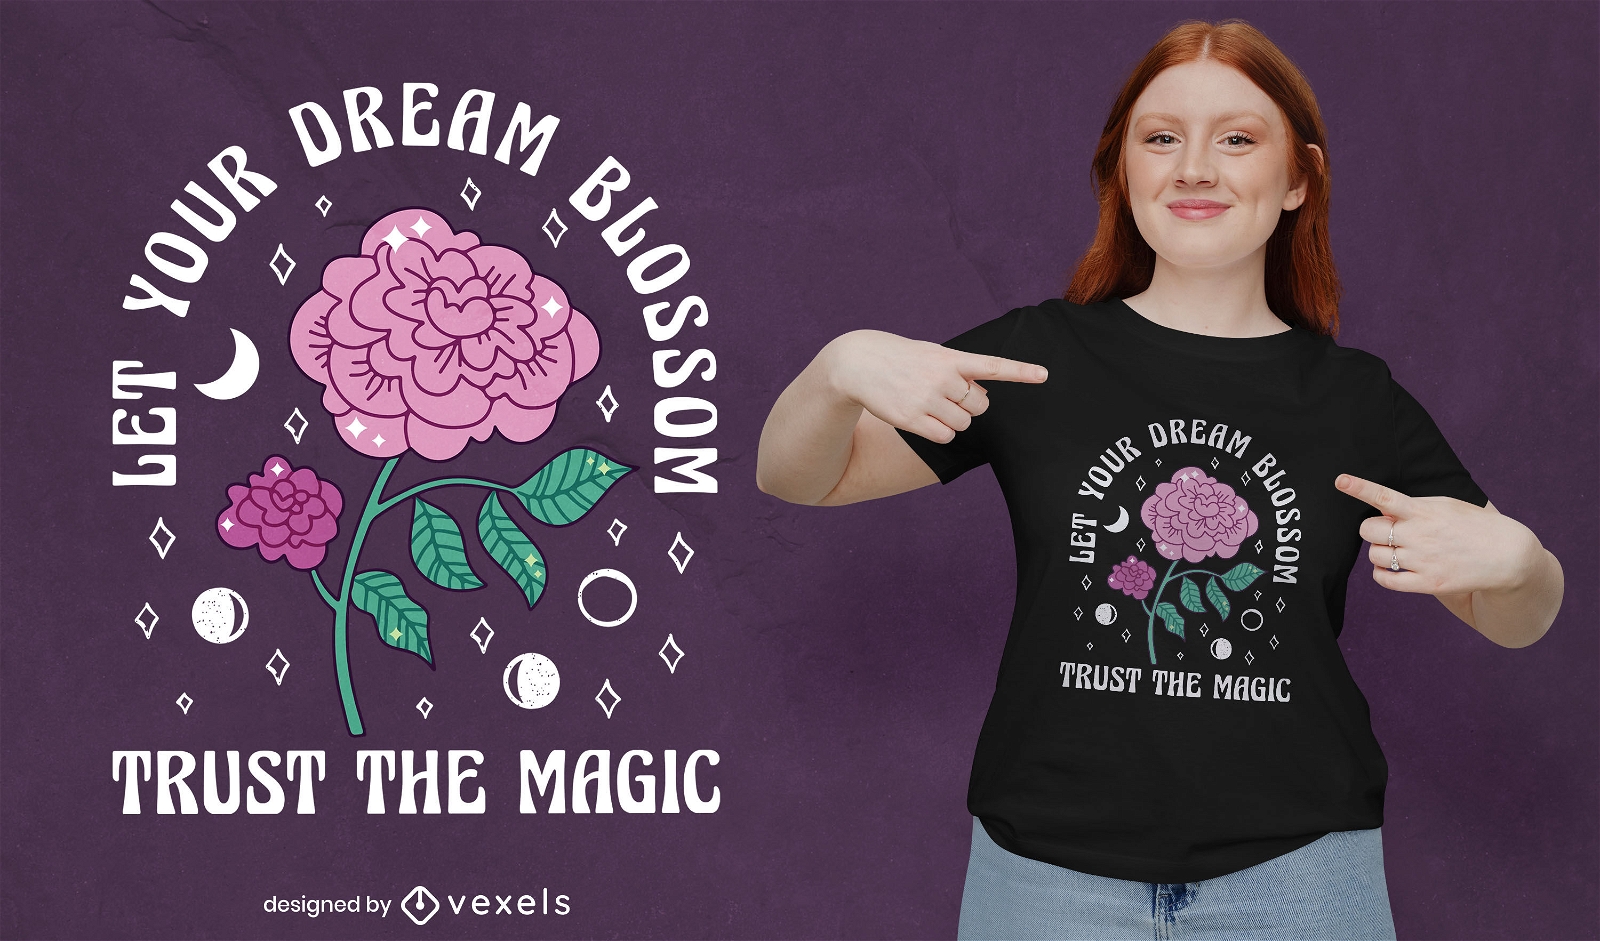 Magic rose Dreams hecho realidad dise?o de camiseta.